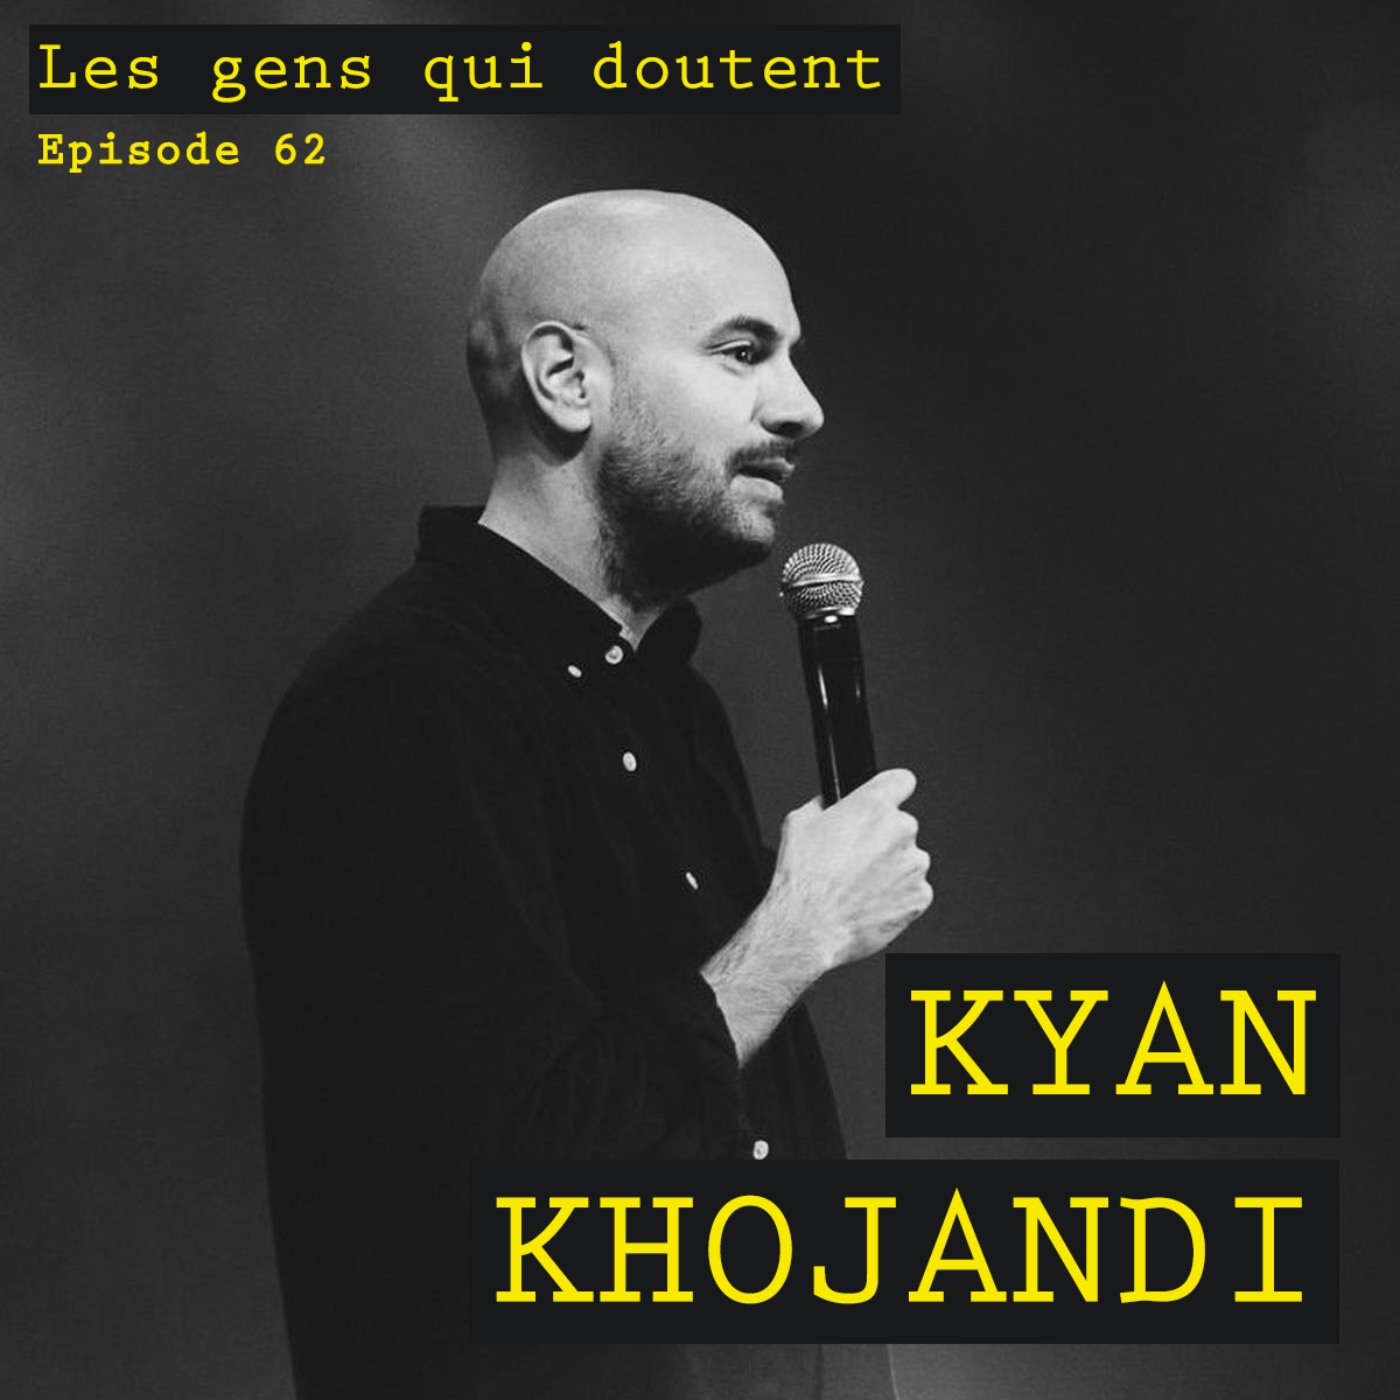 Kyan Khojandi : « Quand y’a du doute, y’a du travail »